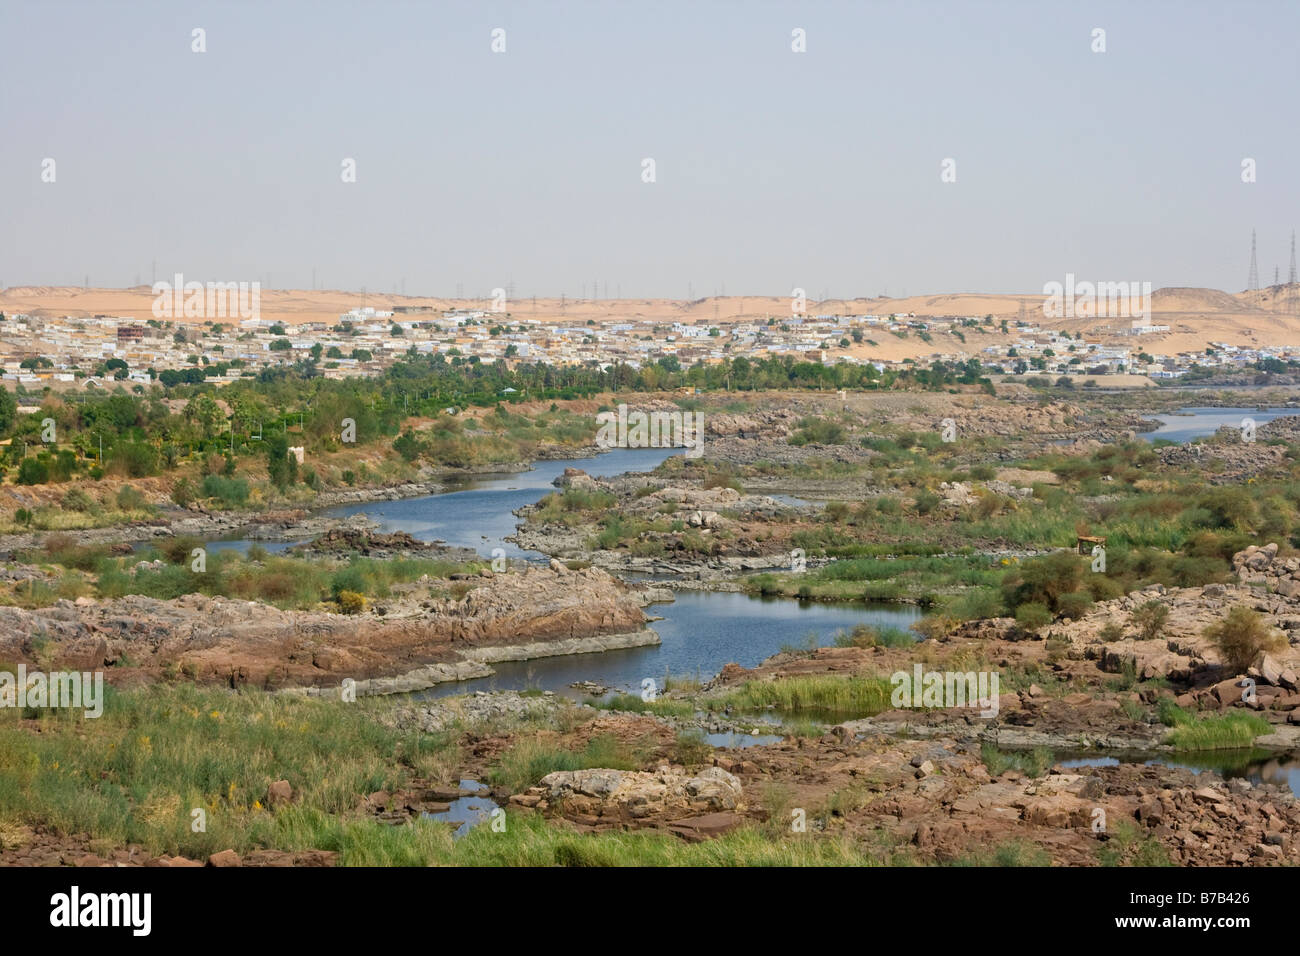 Vue de la première cataracte du Nil, près de l'Égypte Aswan Banque D'Images